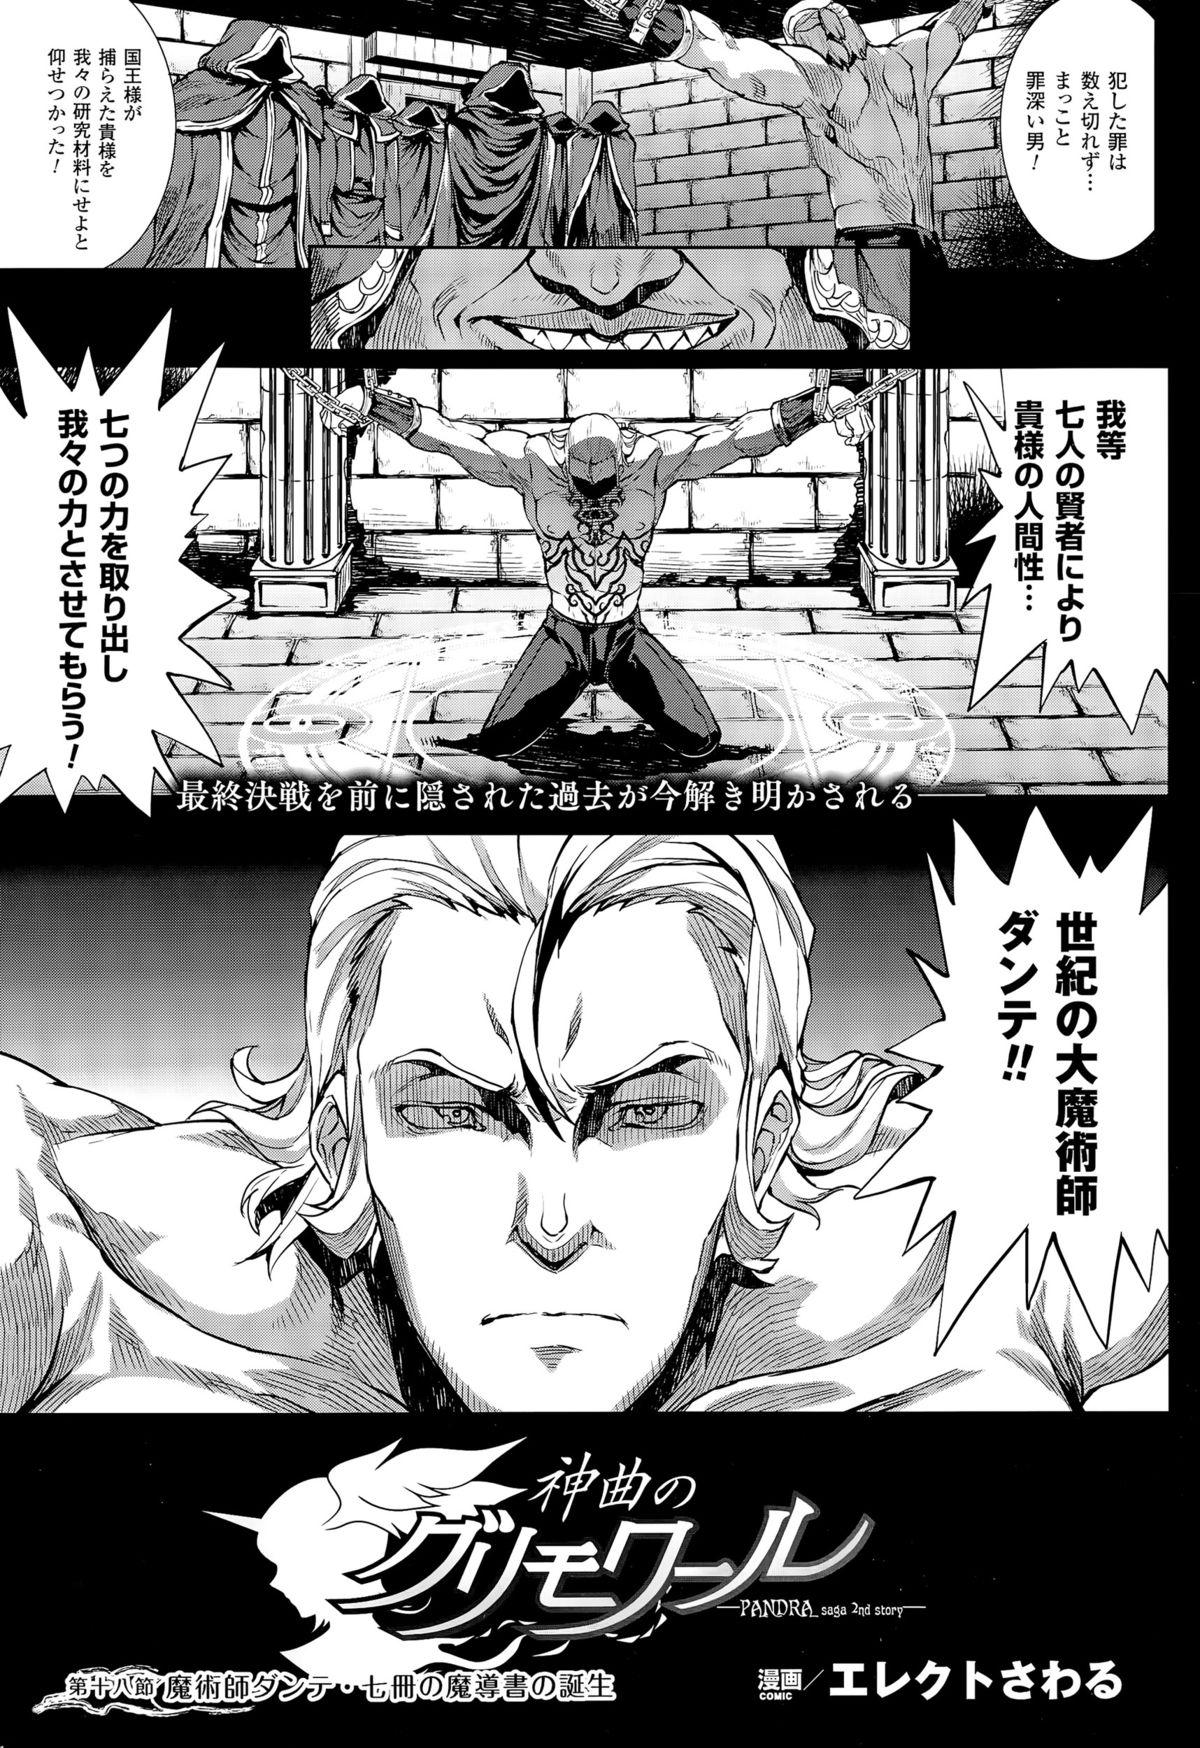 [Erect Sawaru] Shinkyoku no Grimoire -PANDRA saga 2nd story- CH 13-20 109